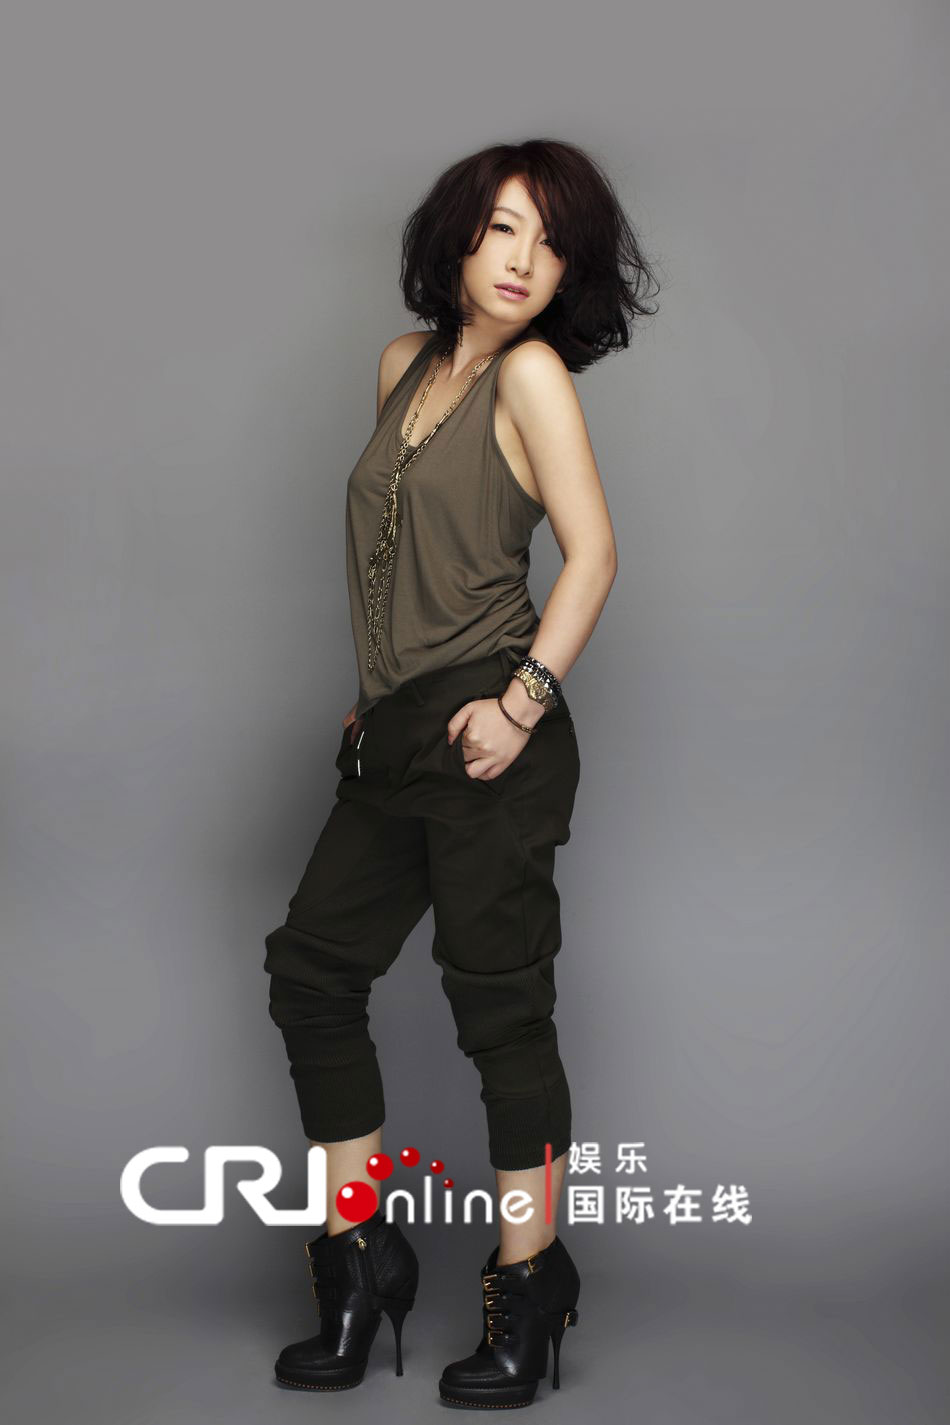 Новые фотографии элегантной актрисы Цинь Хайлу